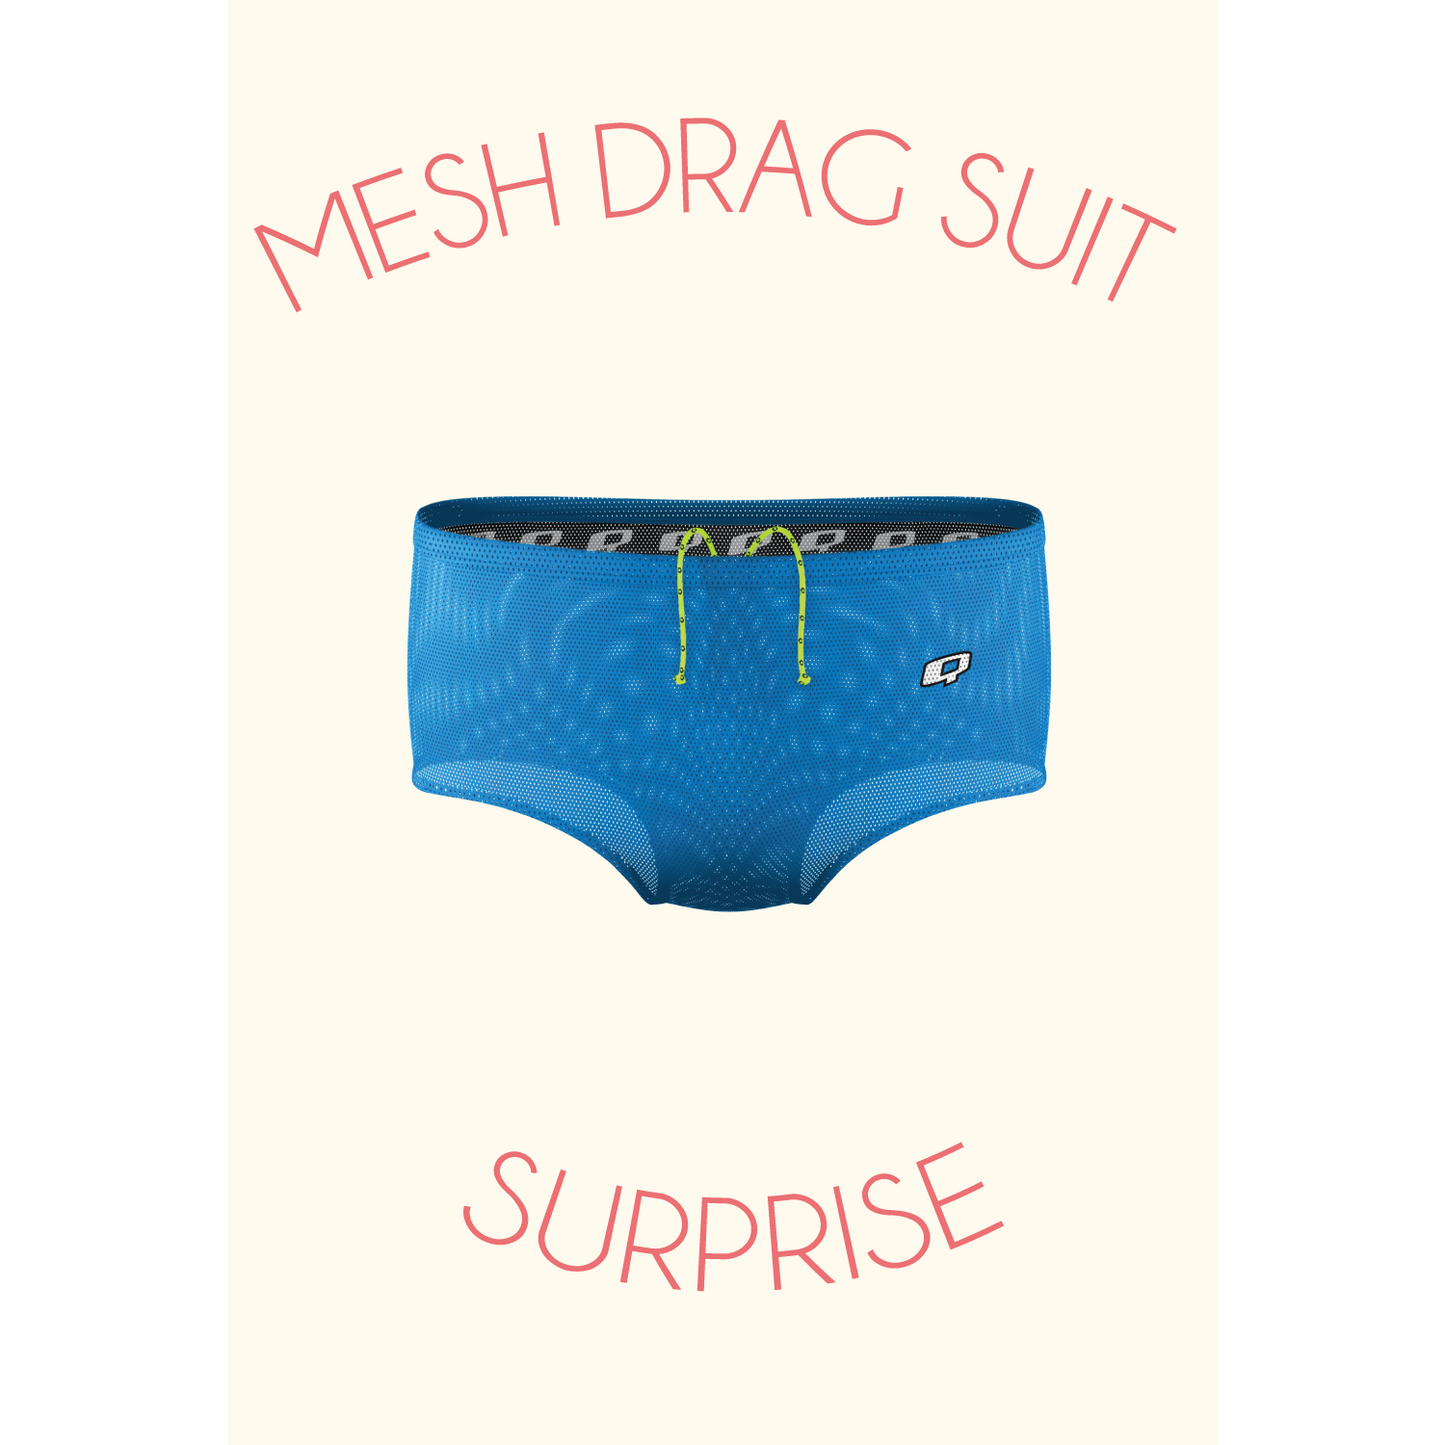 Mesh Drag Suit Surprise - Q Swimwear